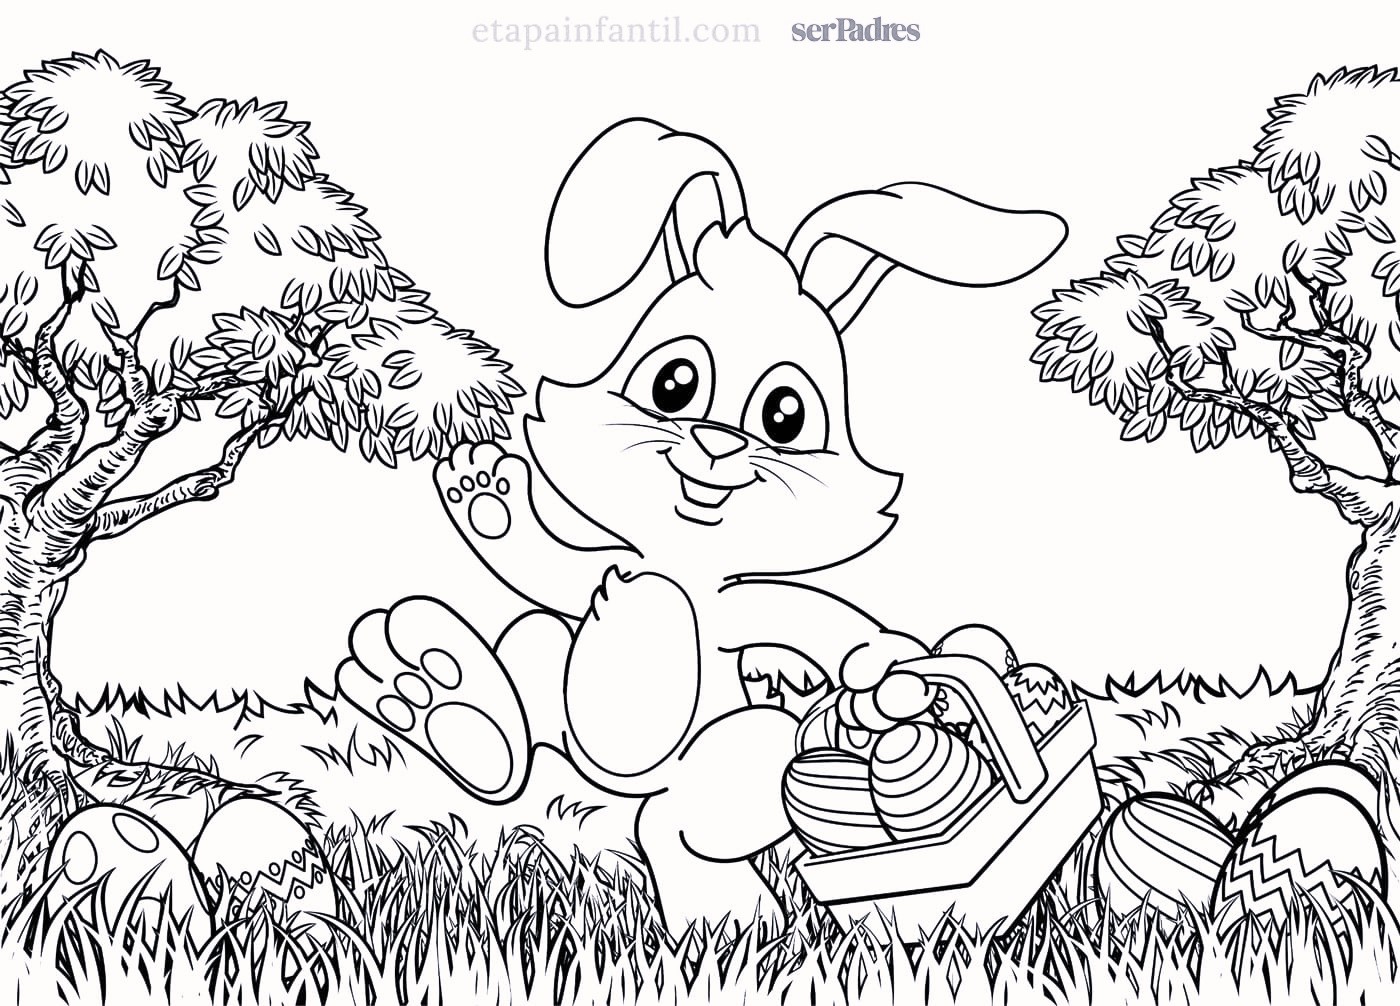 Dibujos para colorear para niños gratis de Páginas para colorear para  adultos - Páginas para colorear para adultos - Dibujos para colorear para  niños